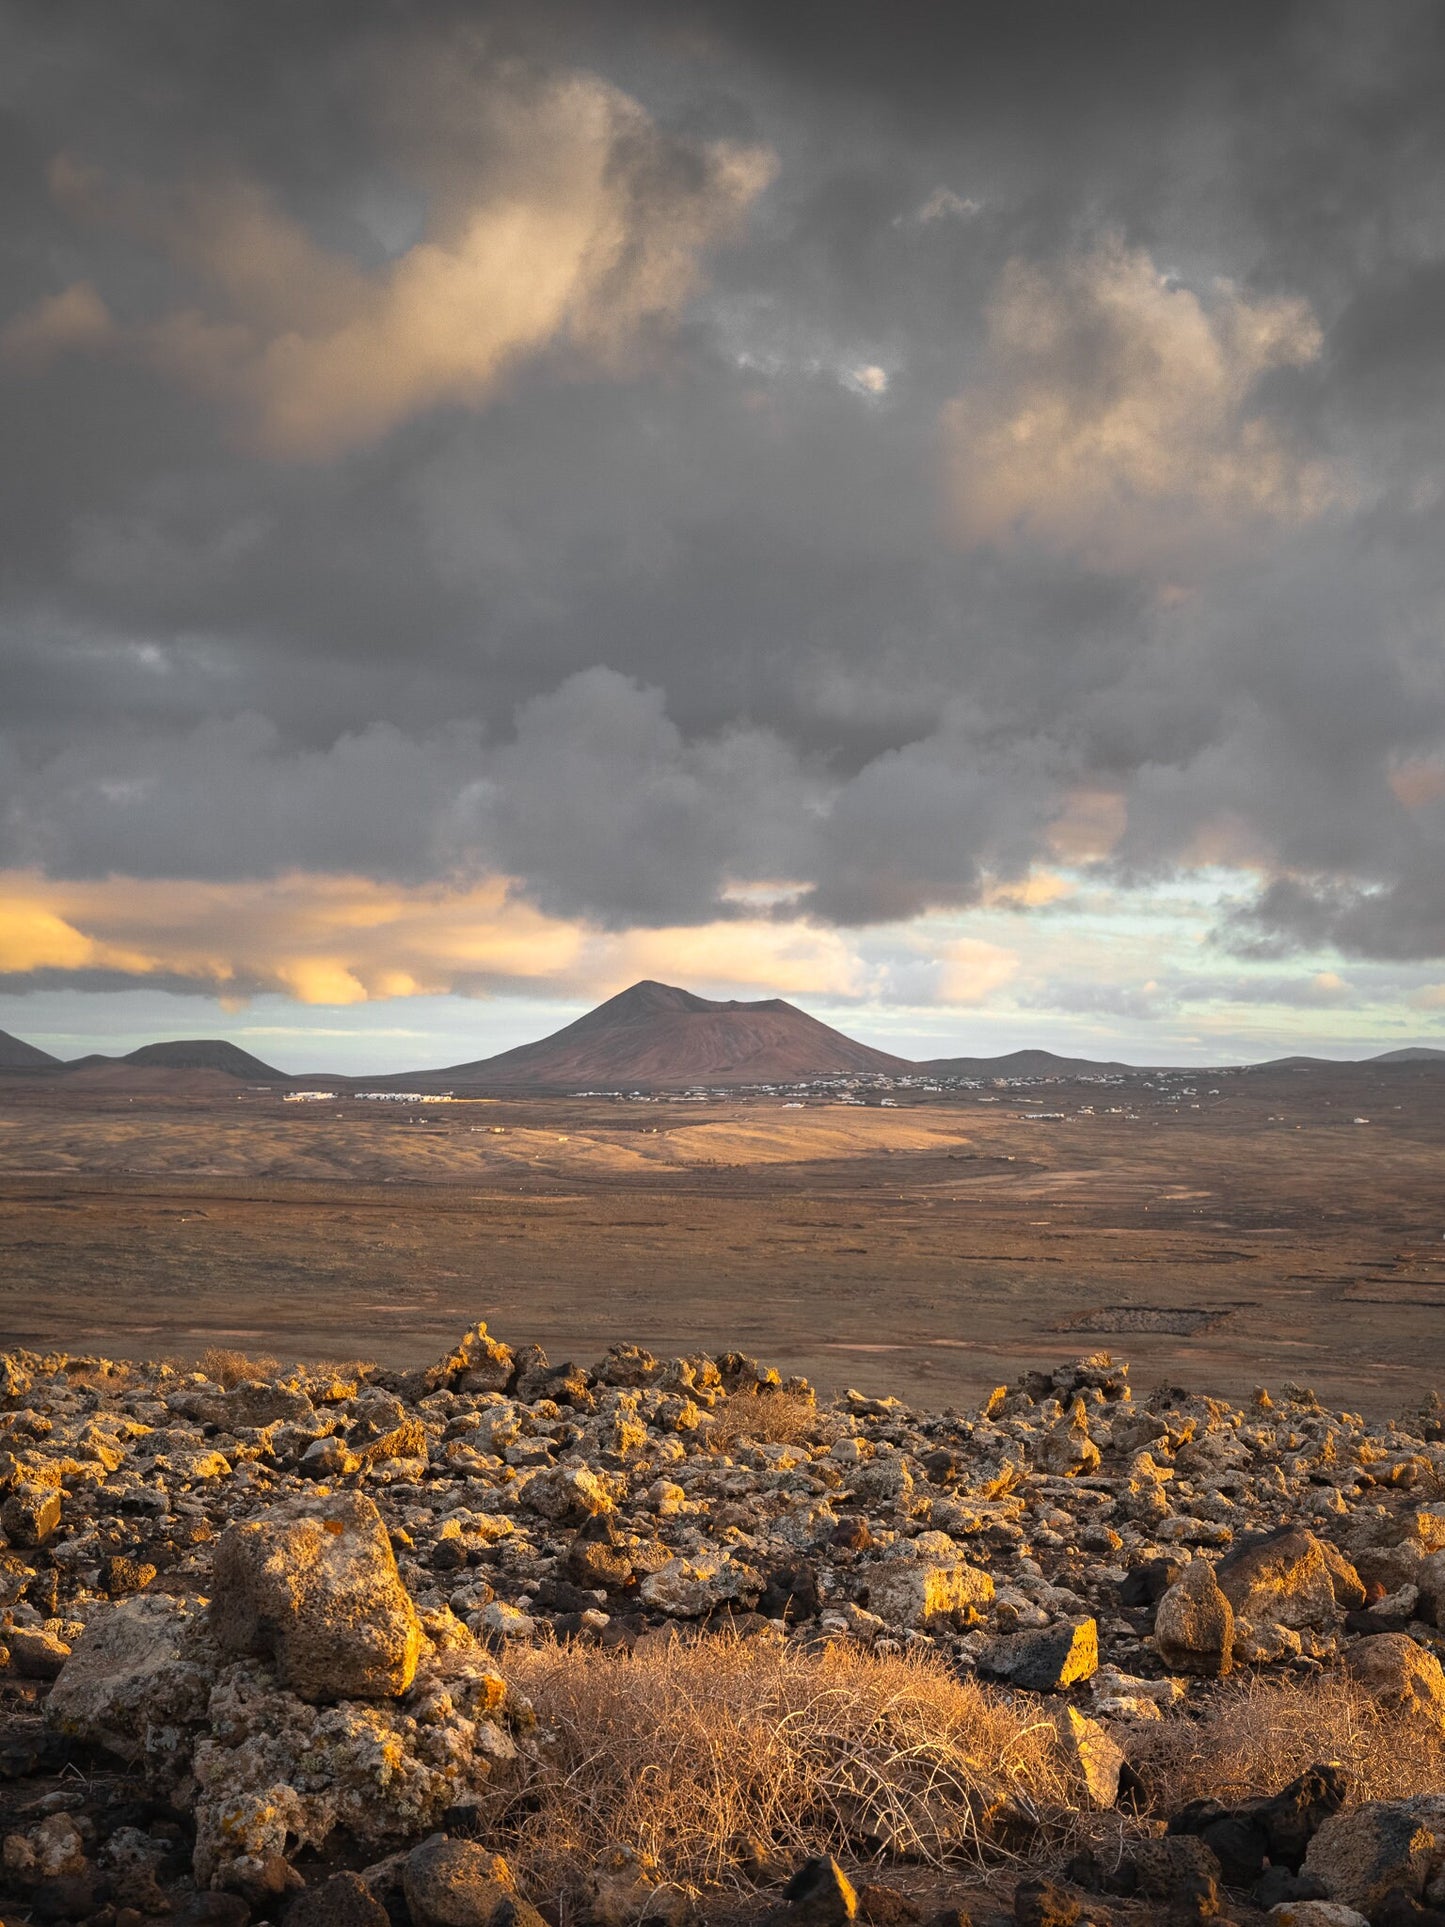 Photography Print - Sunset Montaña de Escanfraga in Fuerteventura